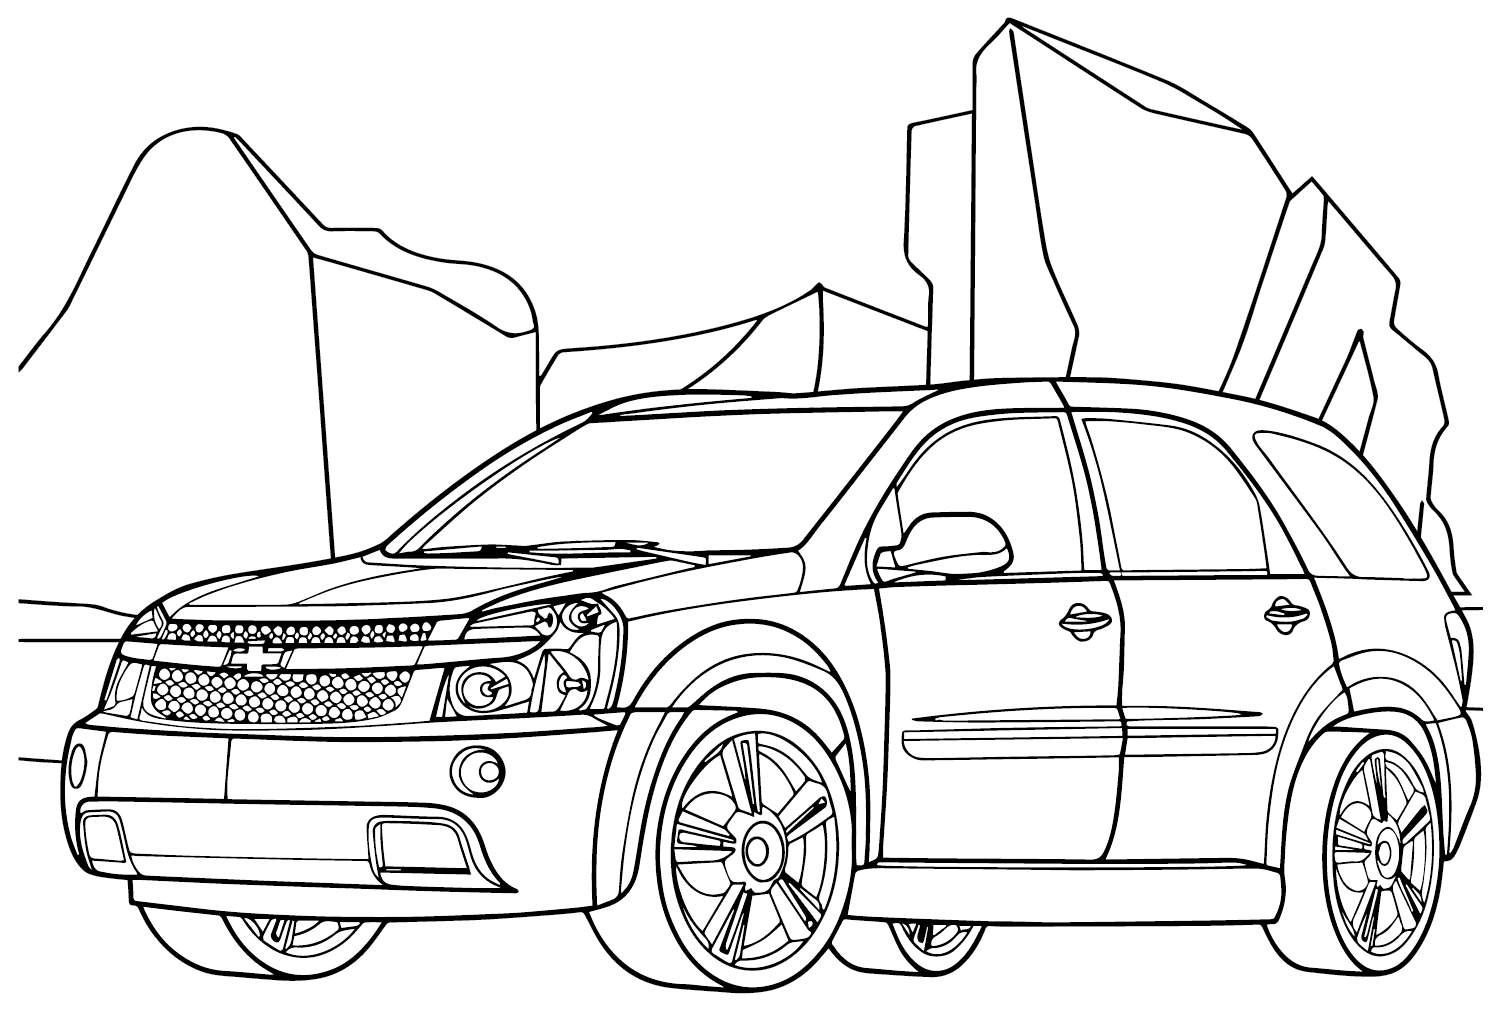 Página para colorir do Chevrolet Equinox Sport da Chevrolet